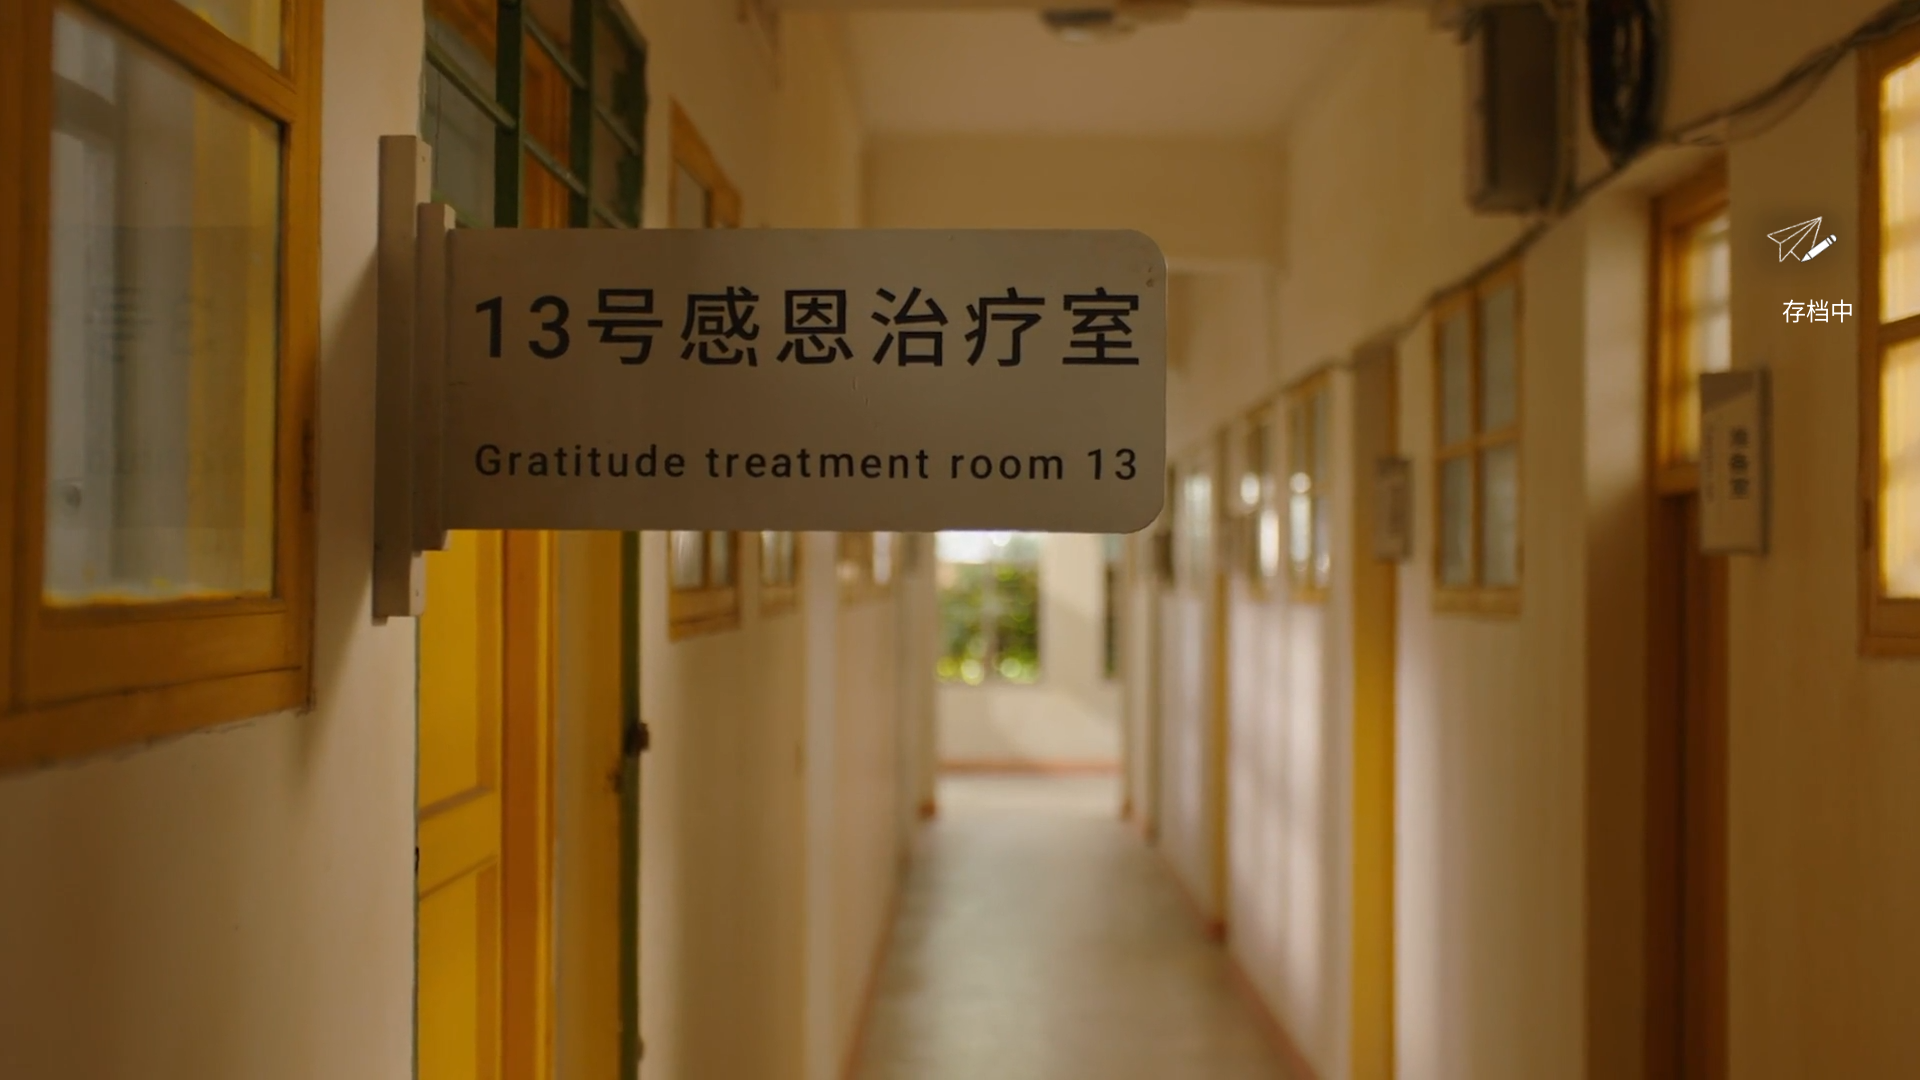 ↑“13号感恩治疗室”